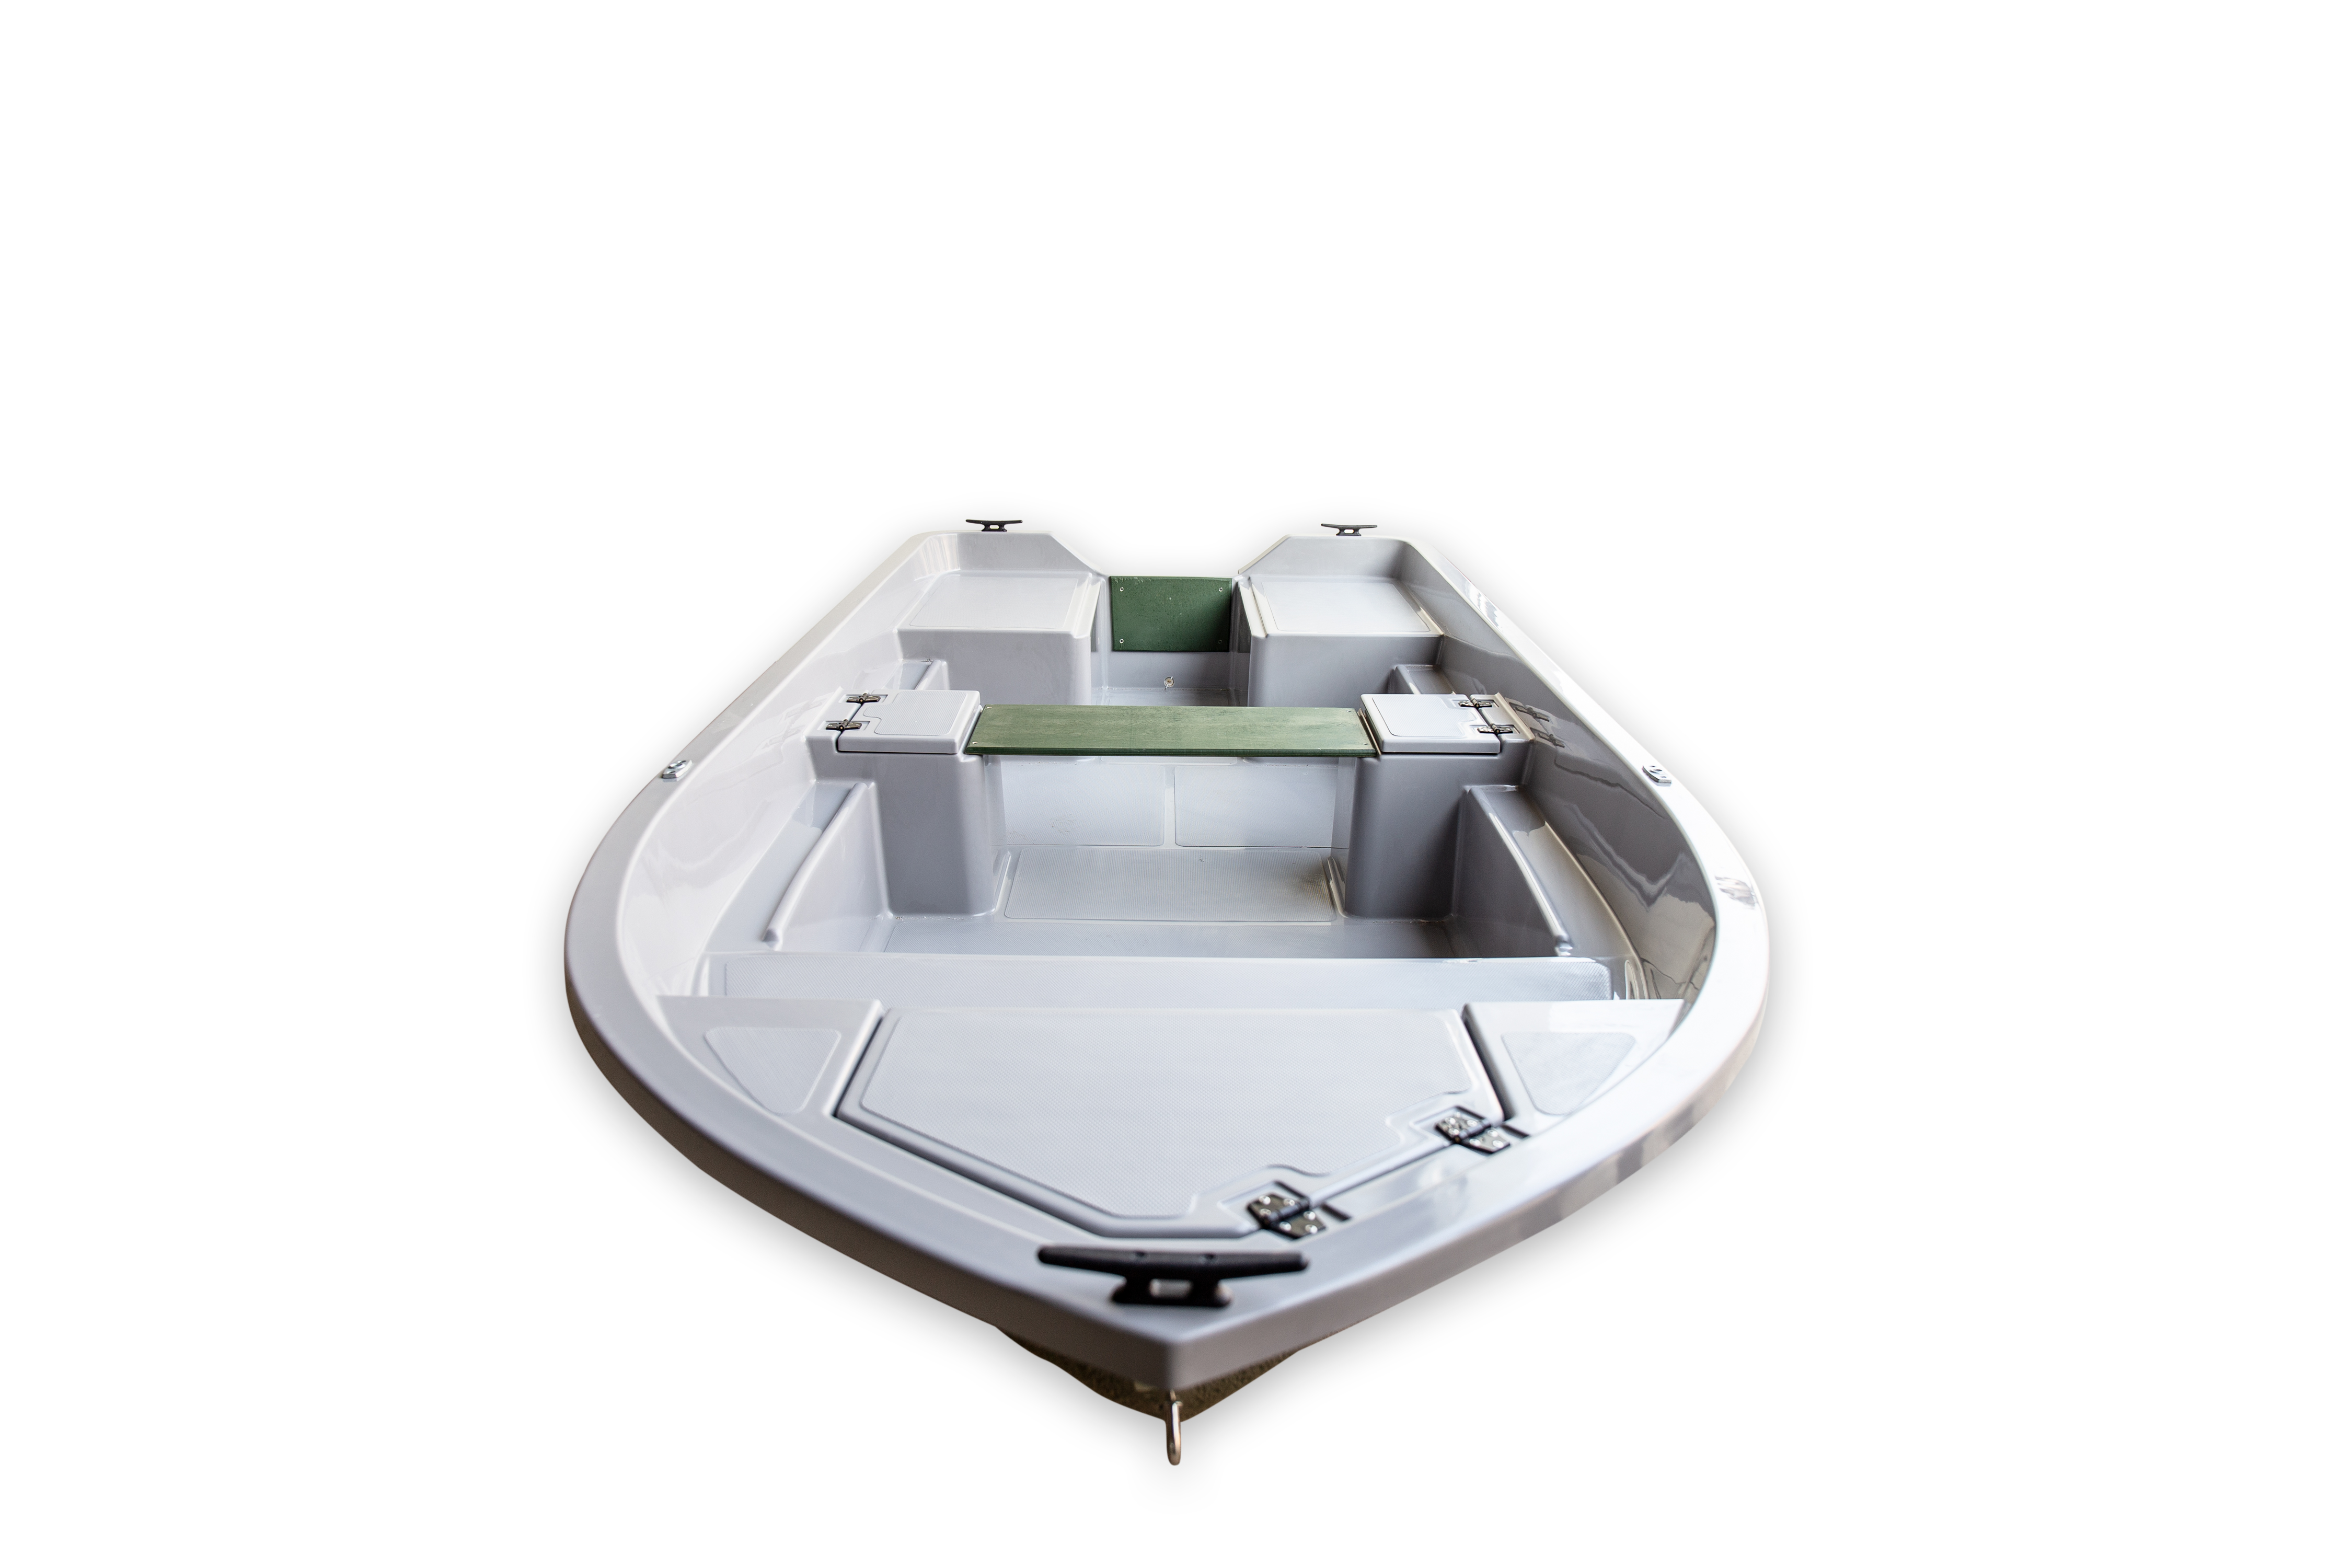 Пластик или алюминий – какая моторная лодка лучше?